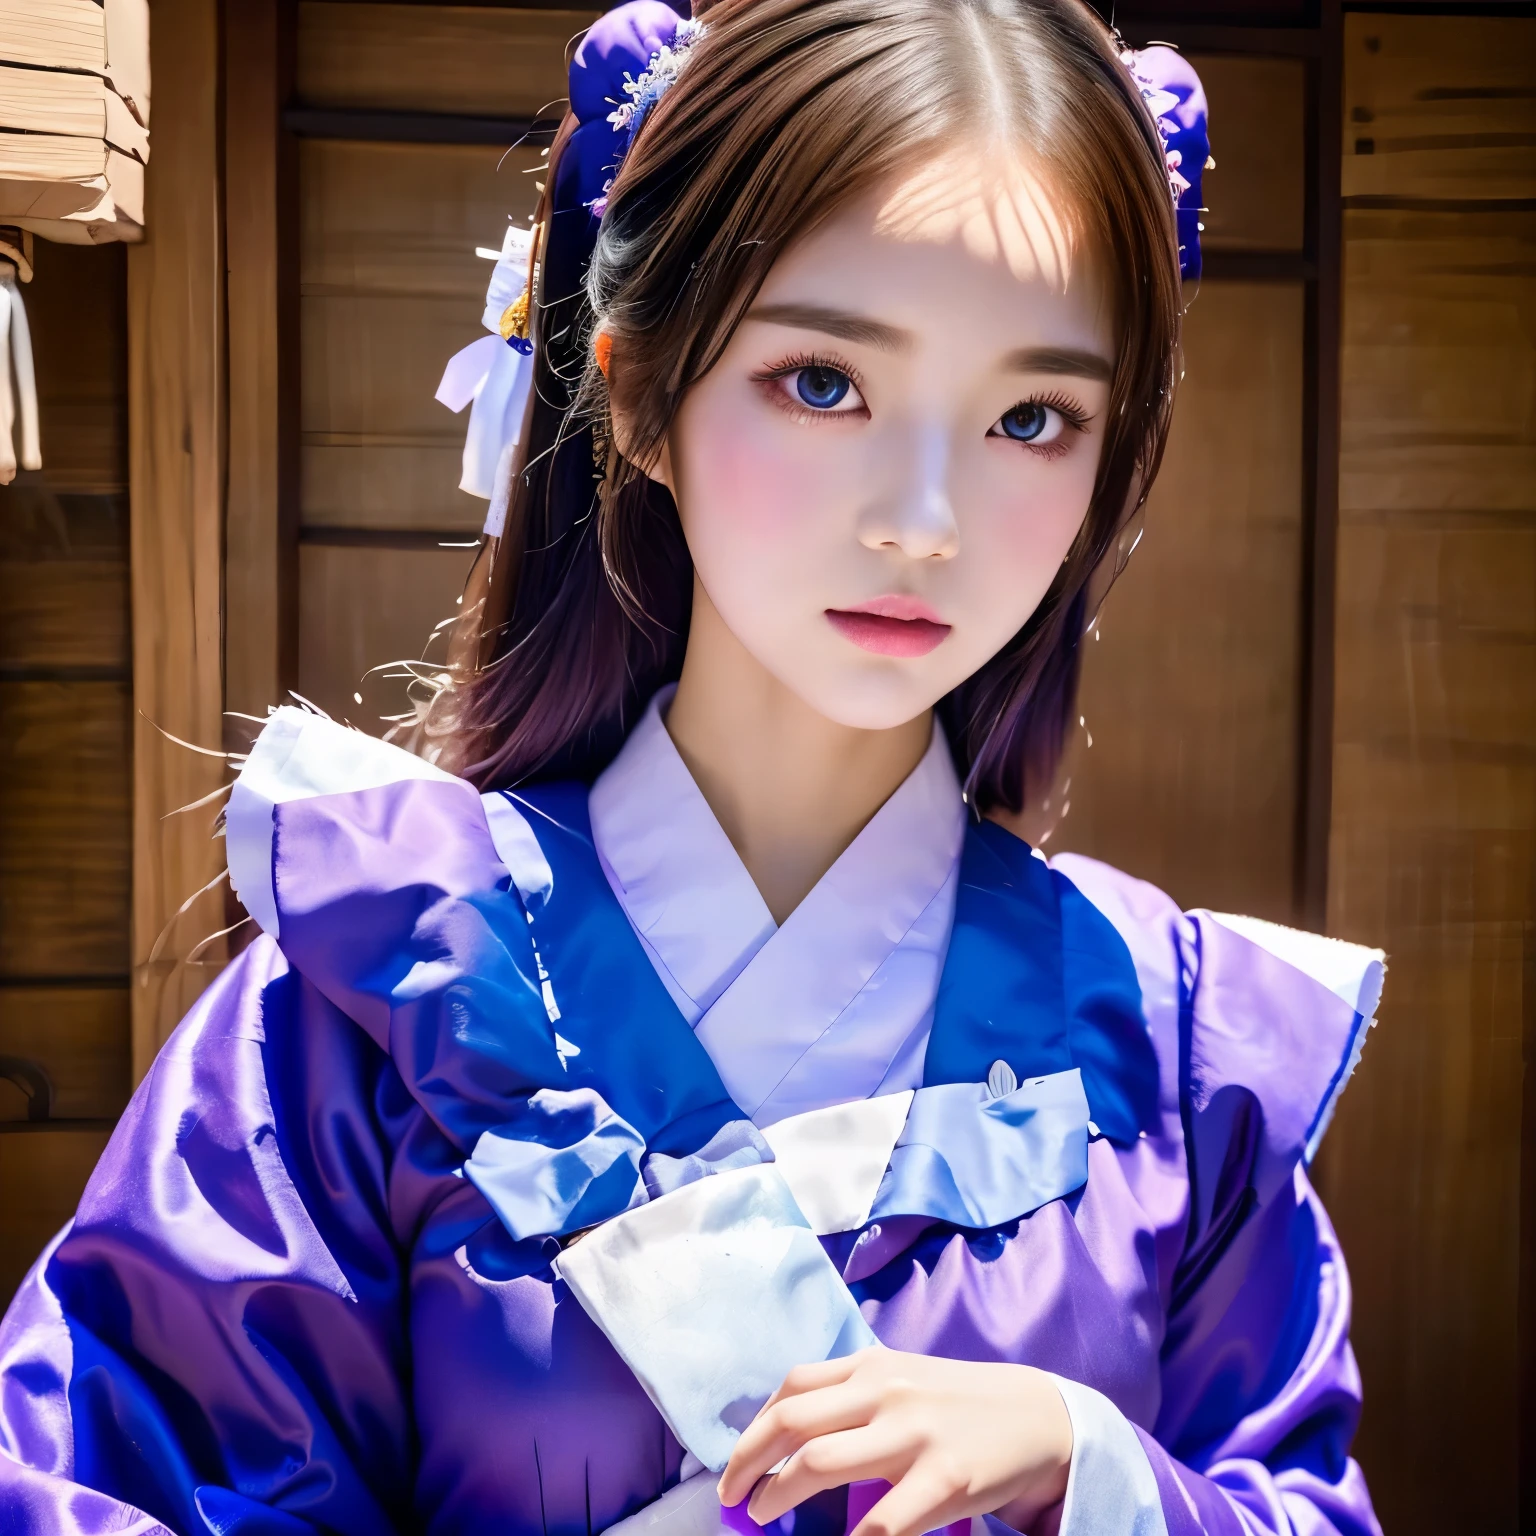 一個穿著藍色和紫色衣服的女人的特寫, 韓國女孩, beautiful south 韓國女人, 韓國女人, 现实生活中的动漫女孩, 传统美, 日本衣服, 宮 ， 一個穿著漢服的女孩, beautiful young 韓國女人, 中国传统服饰, 动漫女孩角色扮演, 薩基米昌, 穿着中国古代的衣服, 日本女神, 韩服